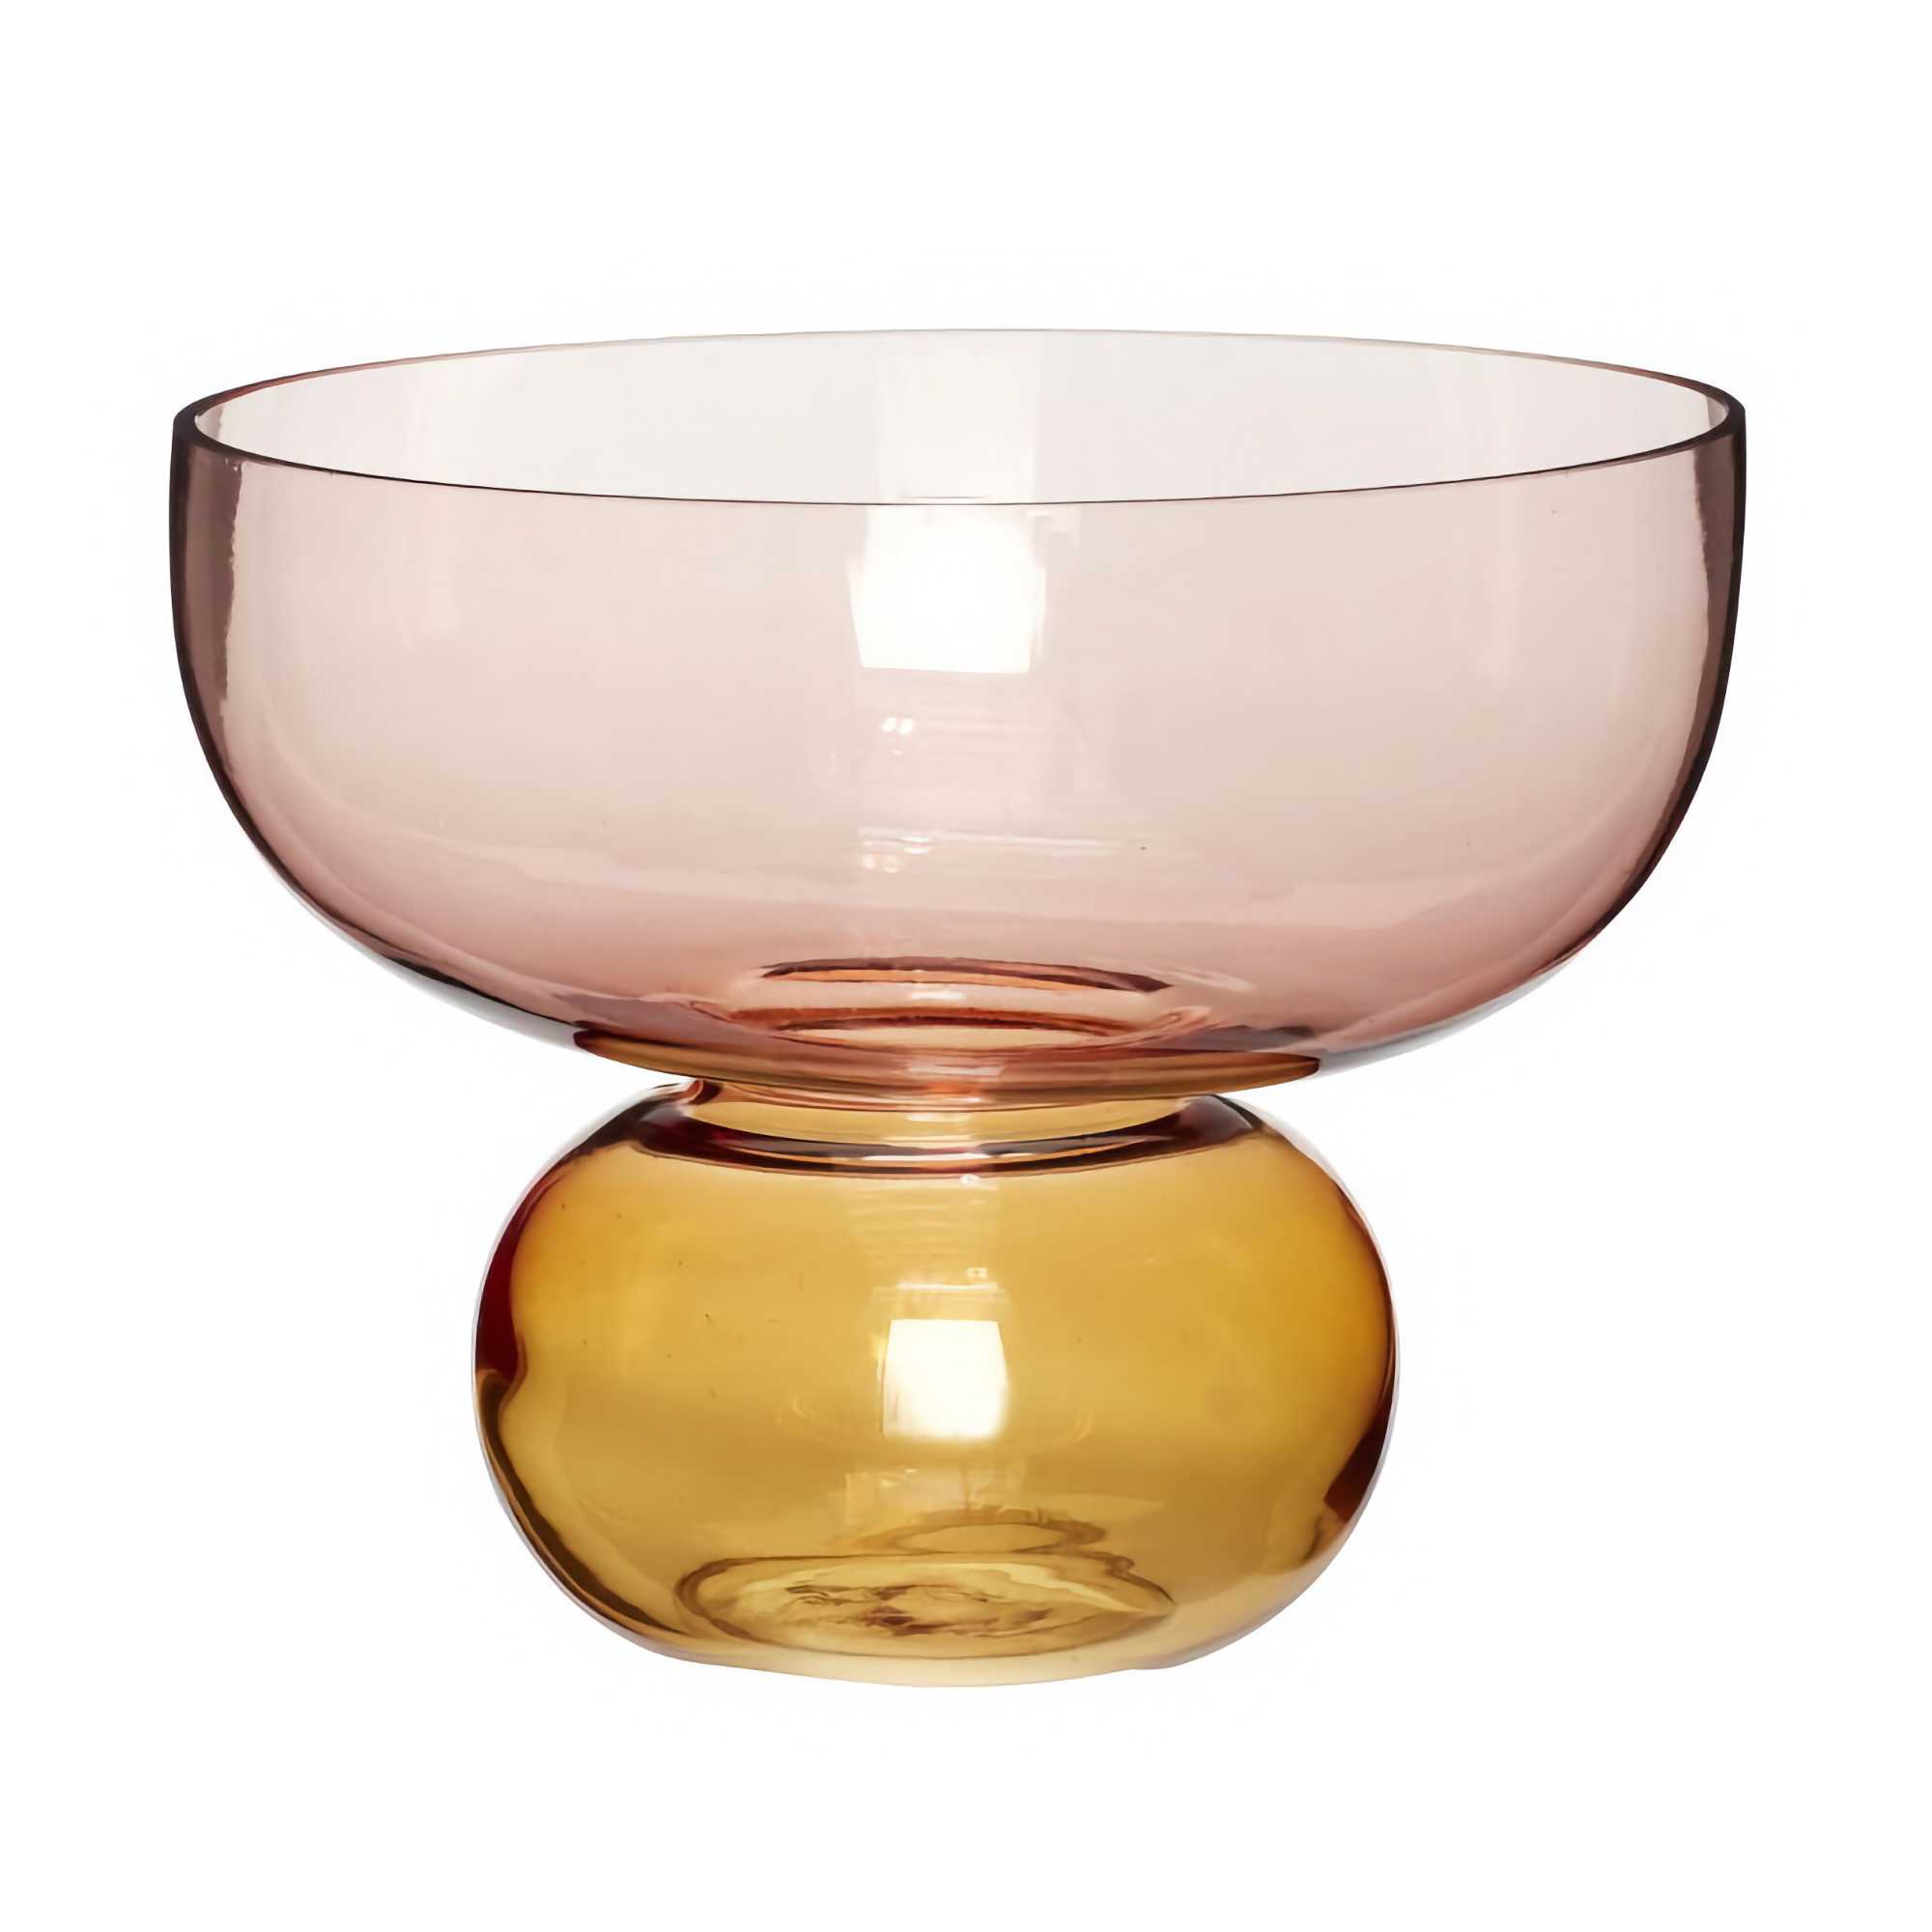 Hubsch Show Vase, Pink/Amber